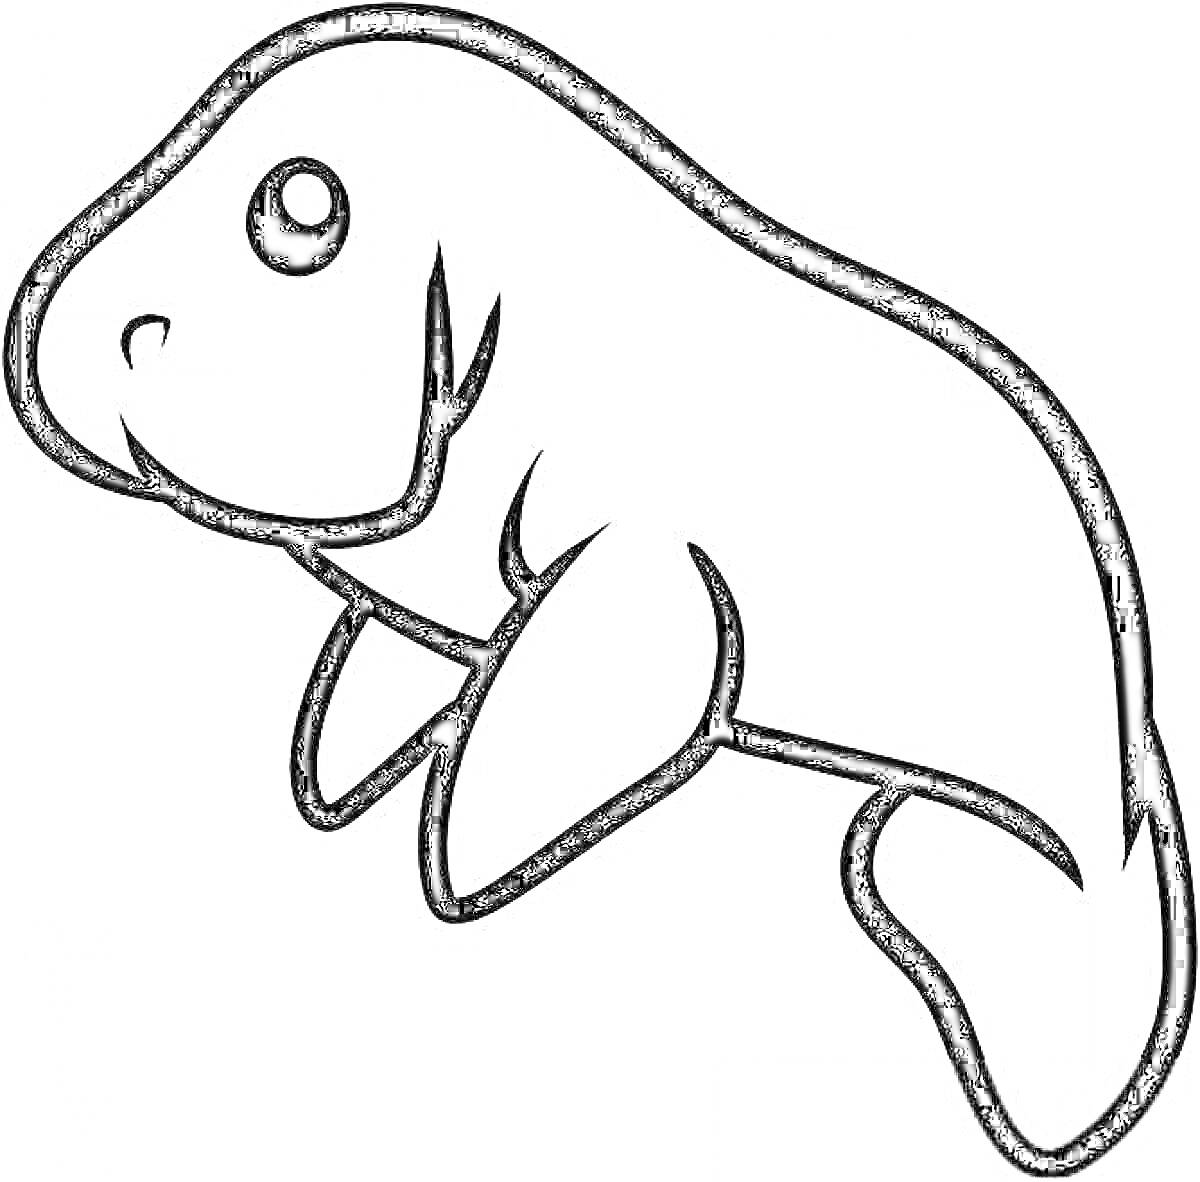 Раскраска Раскраска морского слона: морской слон с едва заметной улыбкой и большими глазами, фоном не подчеркнут